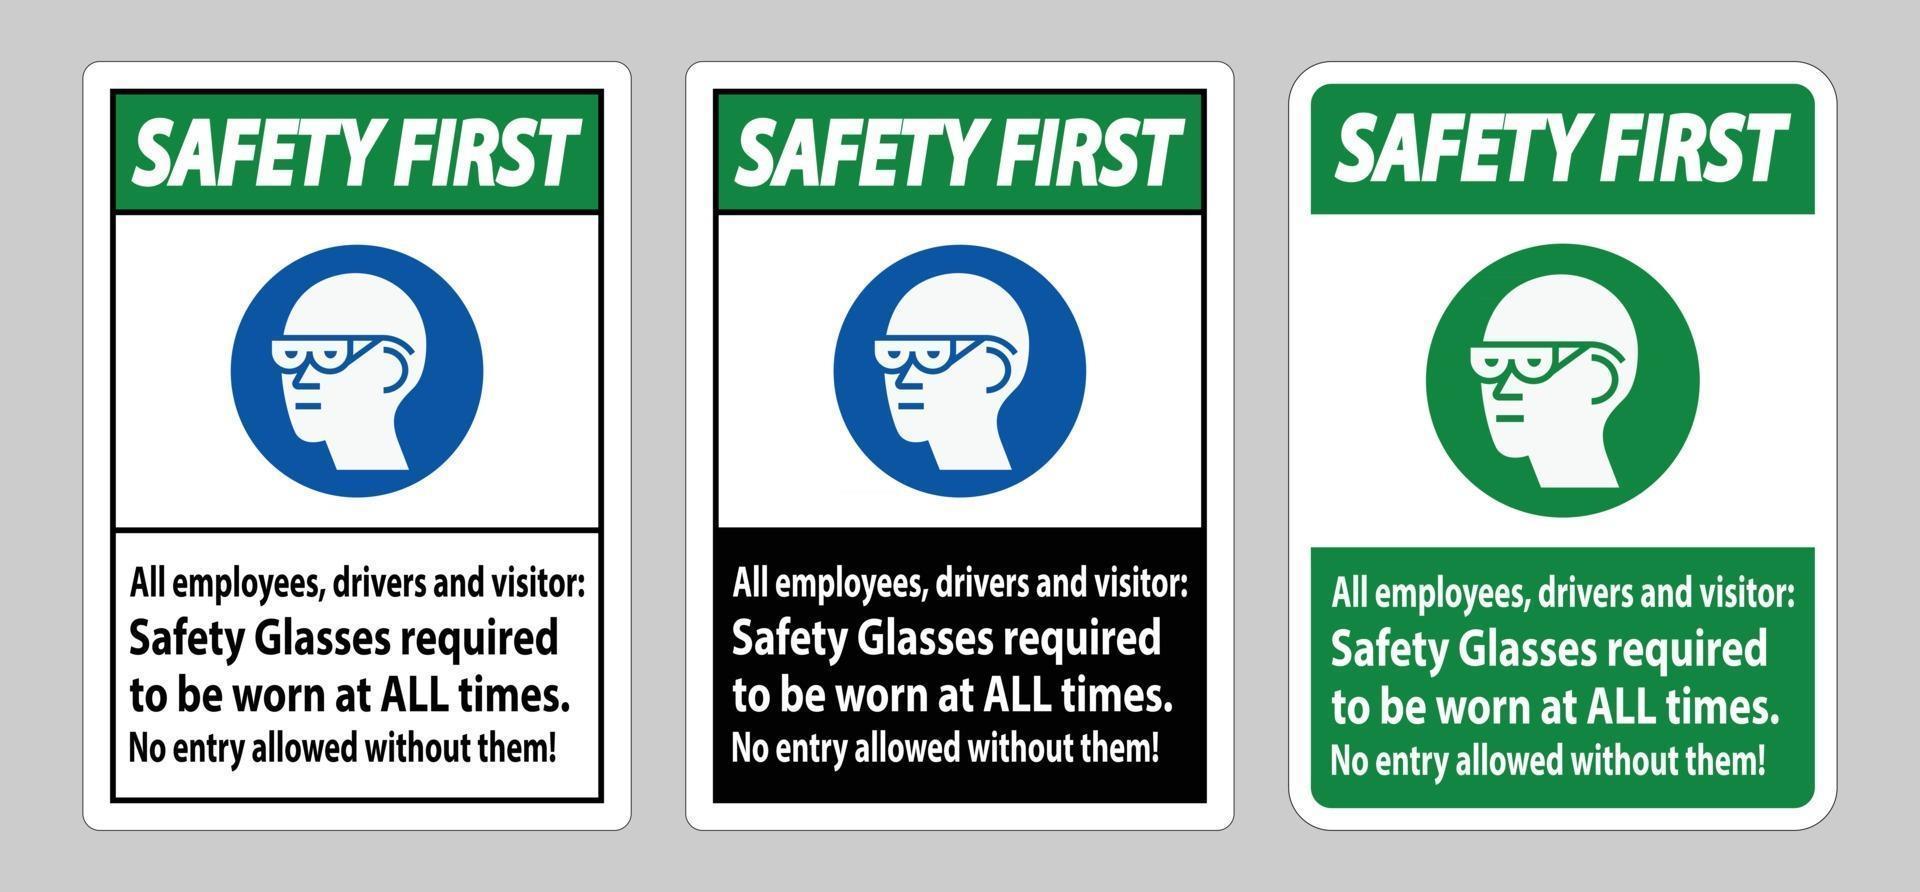 Sicherheit zuerst alle Mitarbeiter, Fahrer und Besucher unterzeichnen, Schutzbrille muss immer getragen werden vektor